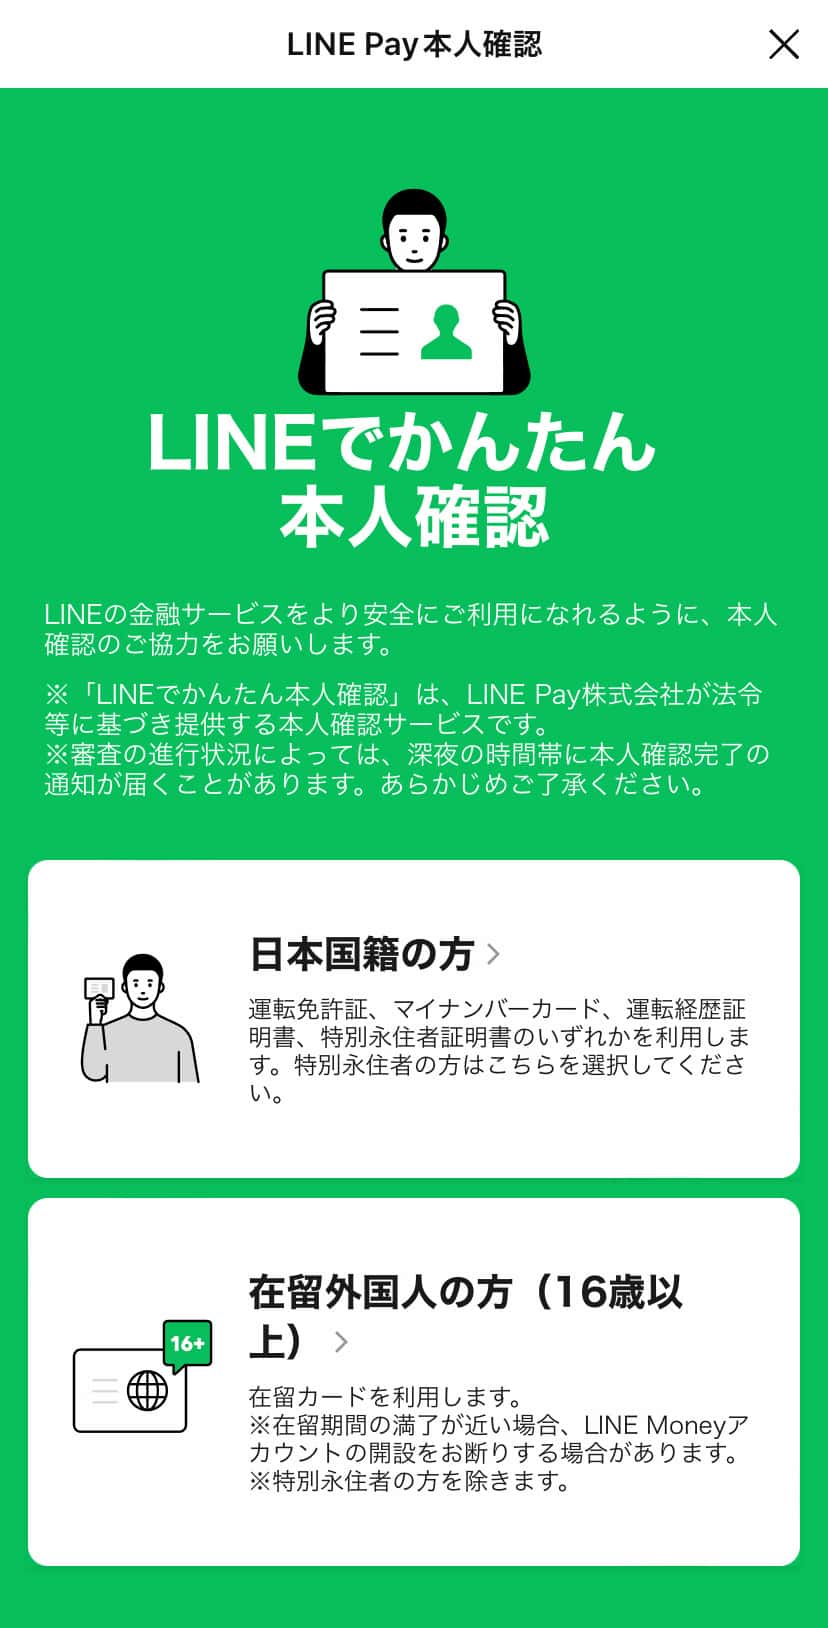 ステップ②：LINE Payに登録する